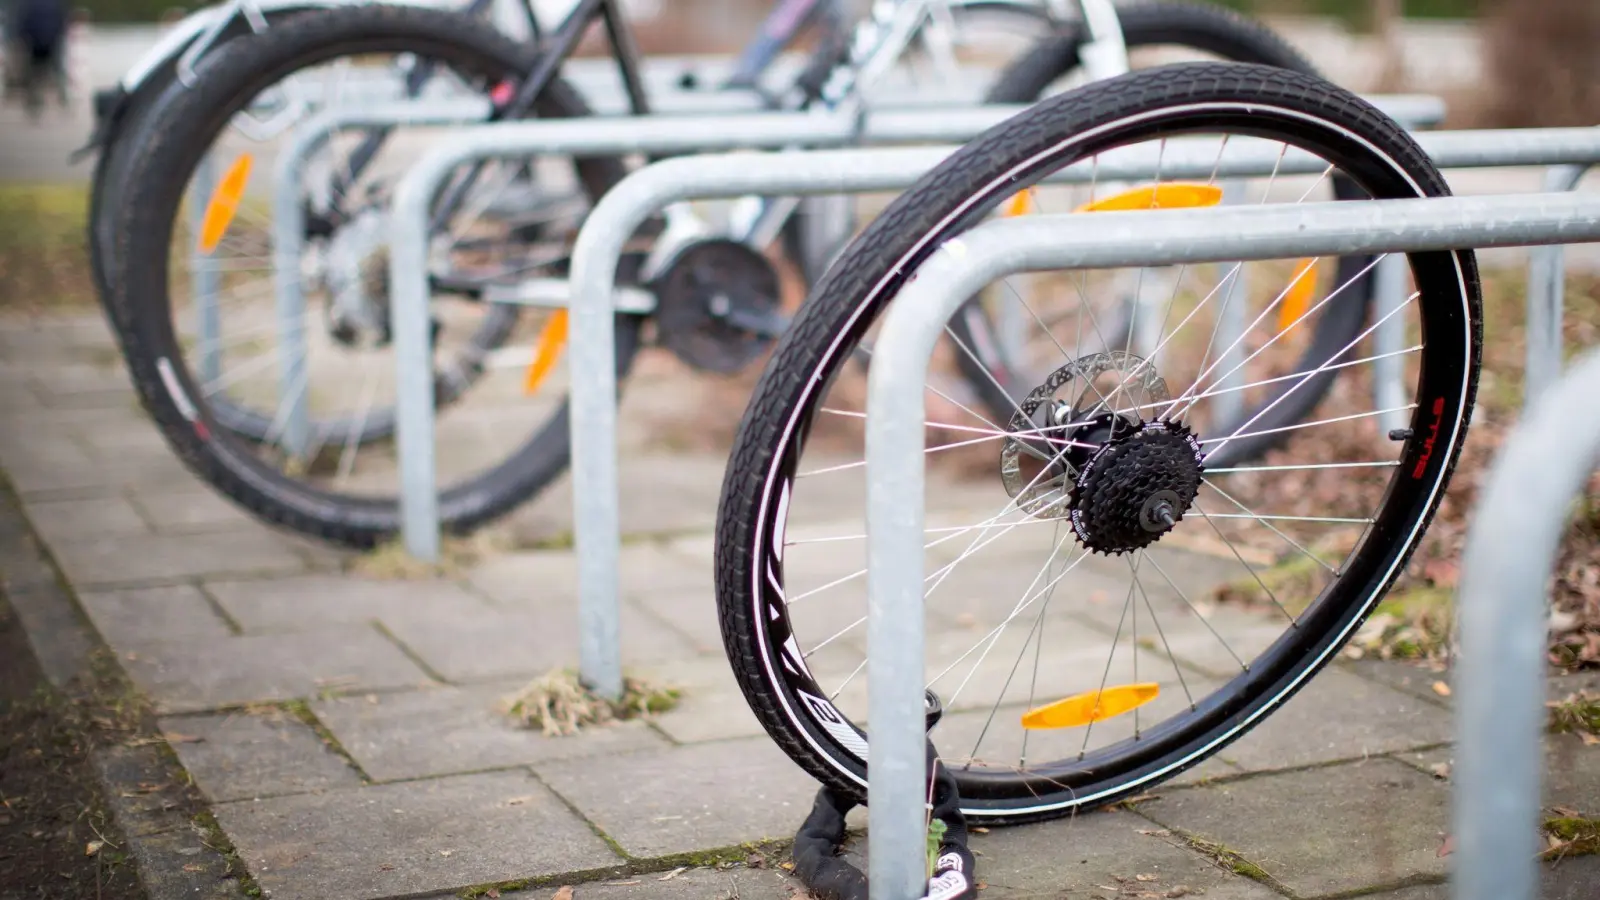 Weg! Was ist nach einem Fahrraddiebstahl zu tun und welche Versicherung könnte für den Schaden aufkommen? (Foto: Martin Gerten/dpa/dpa-tmn)